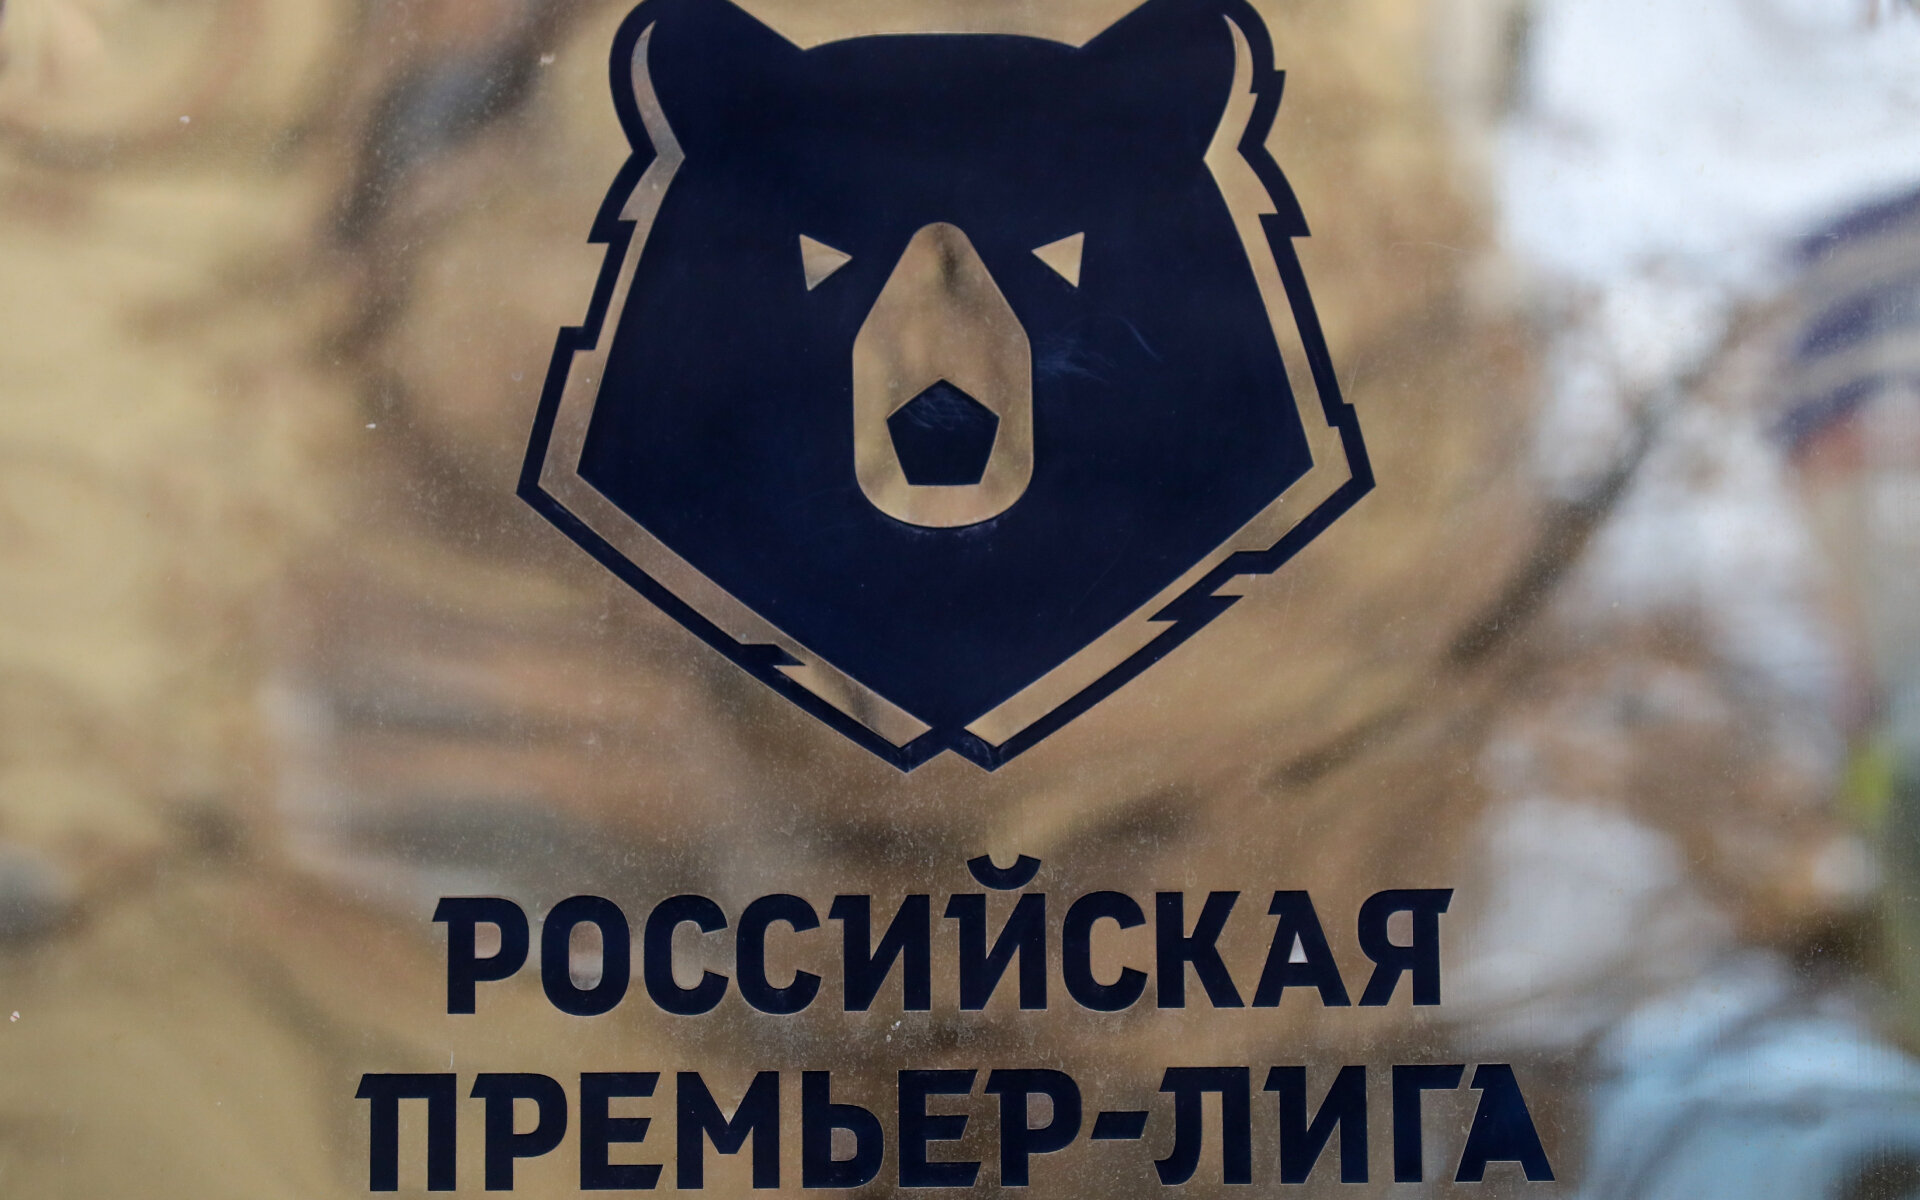 Зенит , Динамо, Сочи и ЦСКА подали апелляцию в CAS на решение УЕФА об отстранении от еврокубков